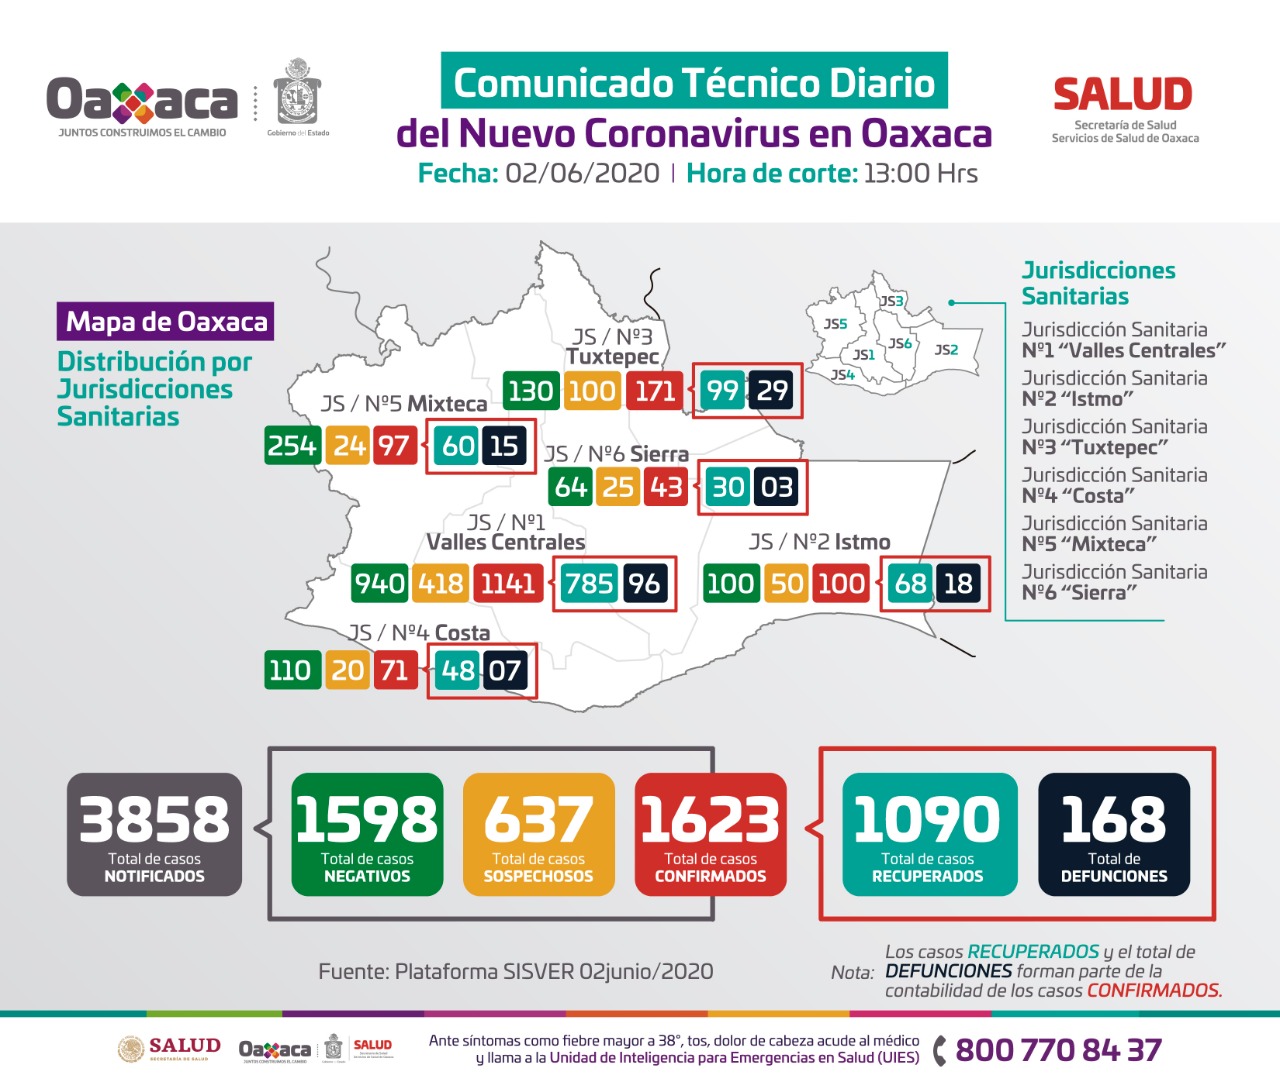 Registra sector Salud de Oaxaca 111 casos nuevos de Covid-19 en la plataforma nacional